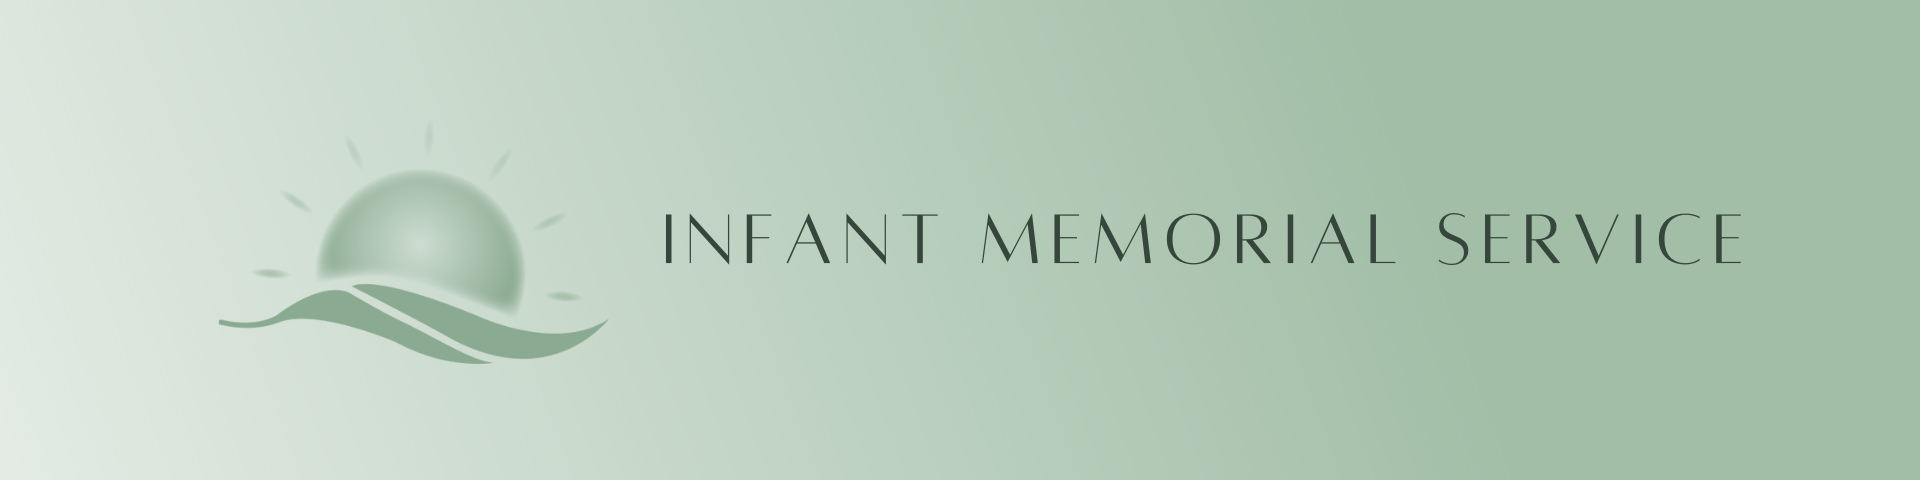 Infant_Memorial_Service_Banner